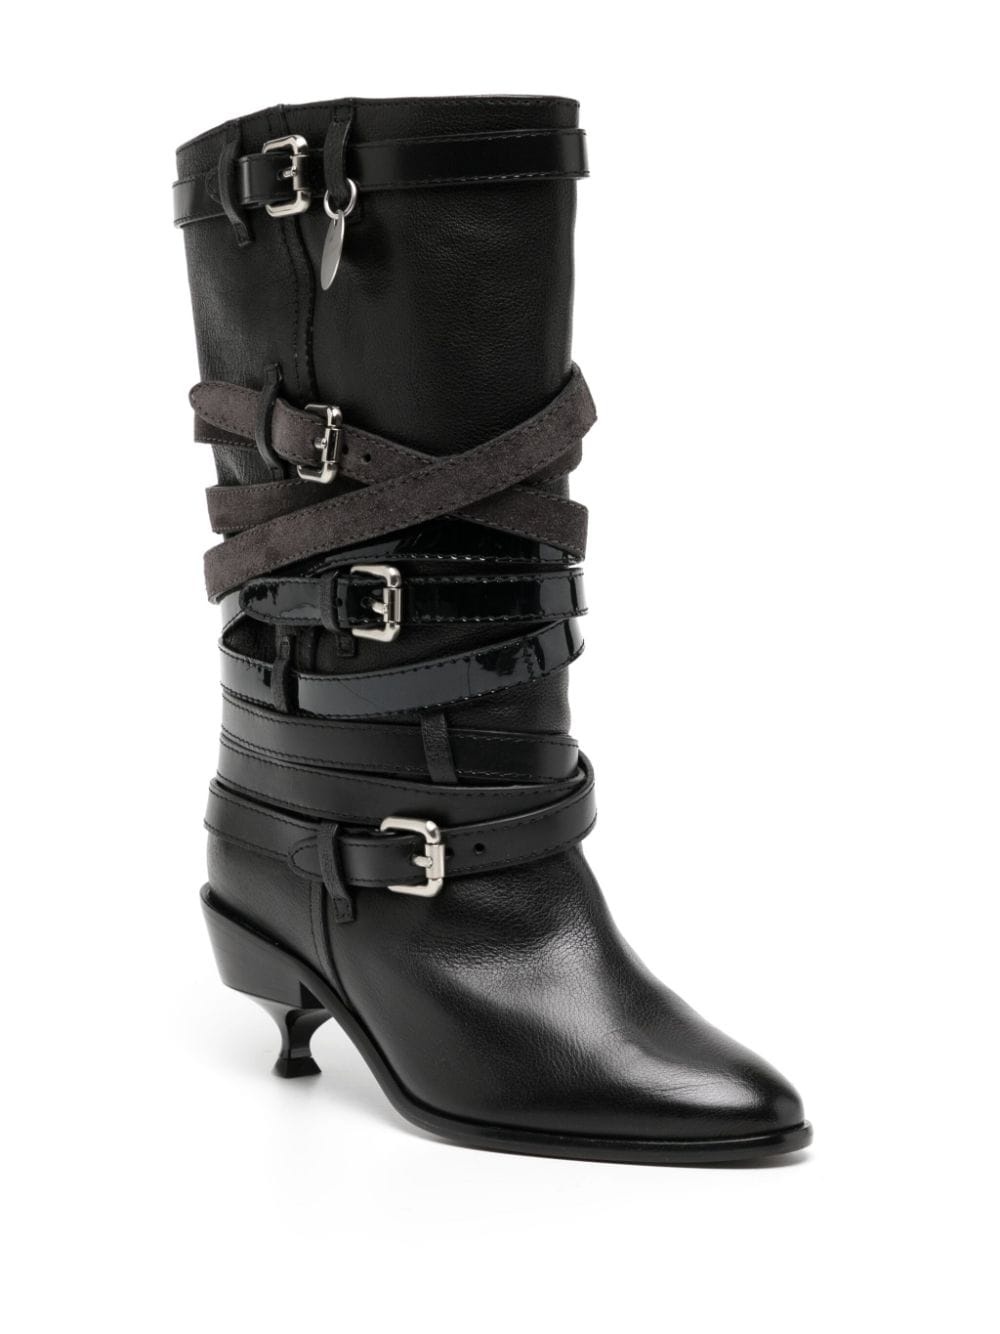 Quad belt leather boots - 2